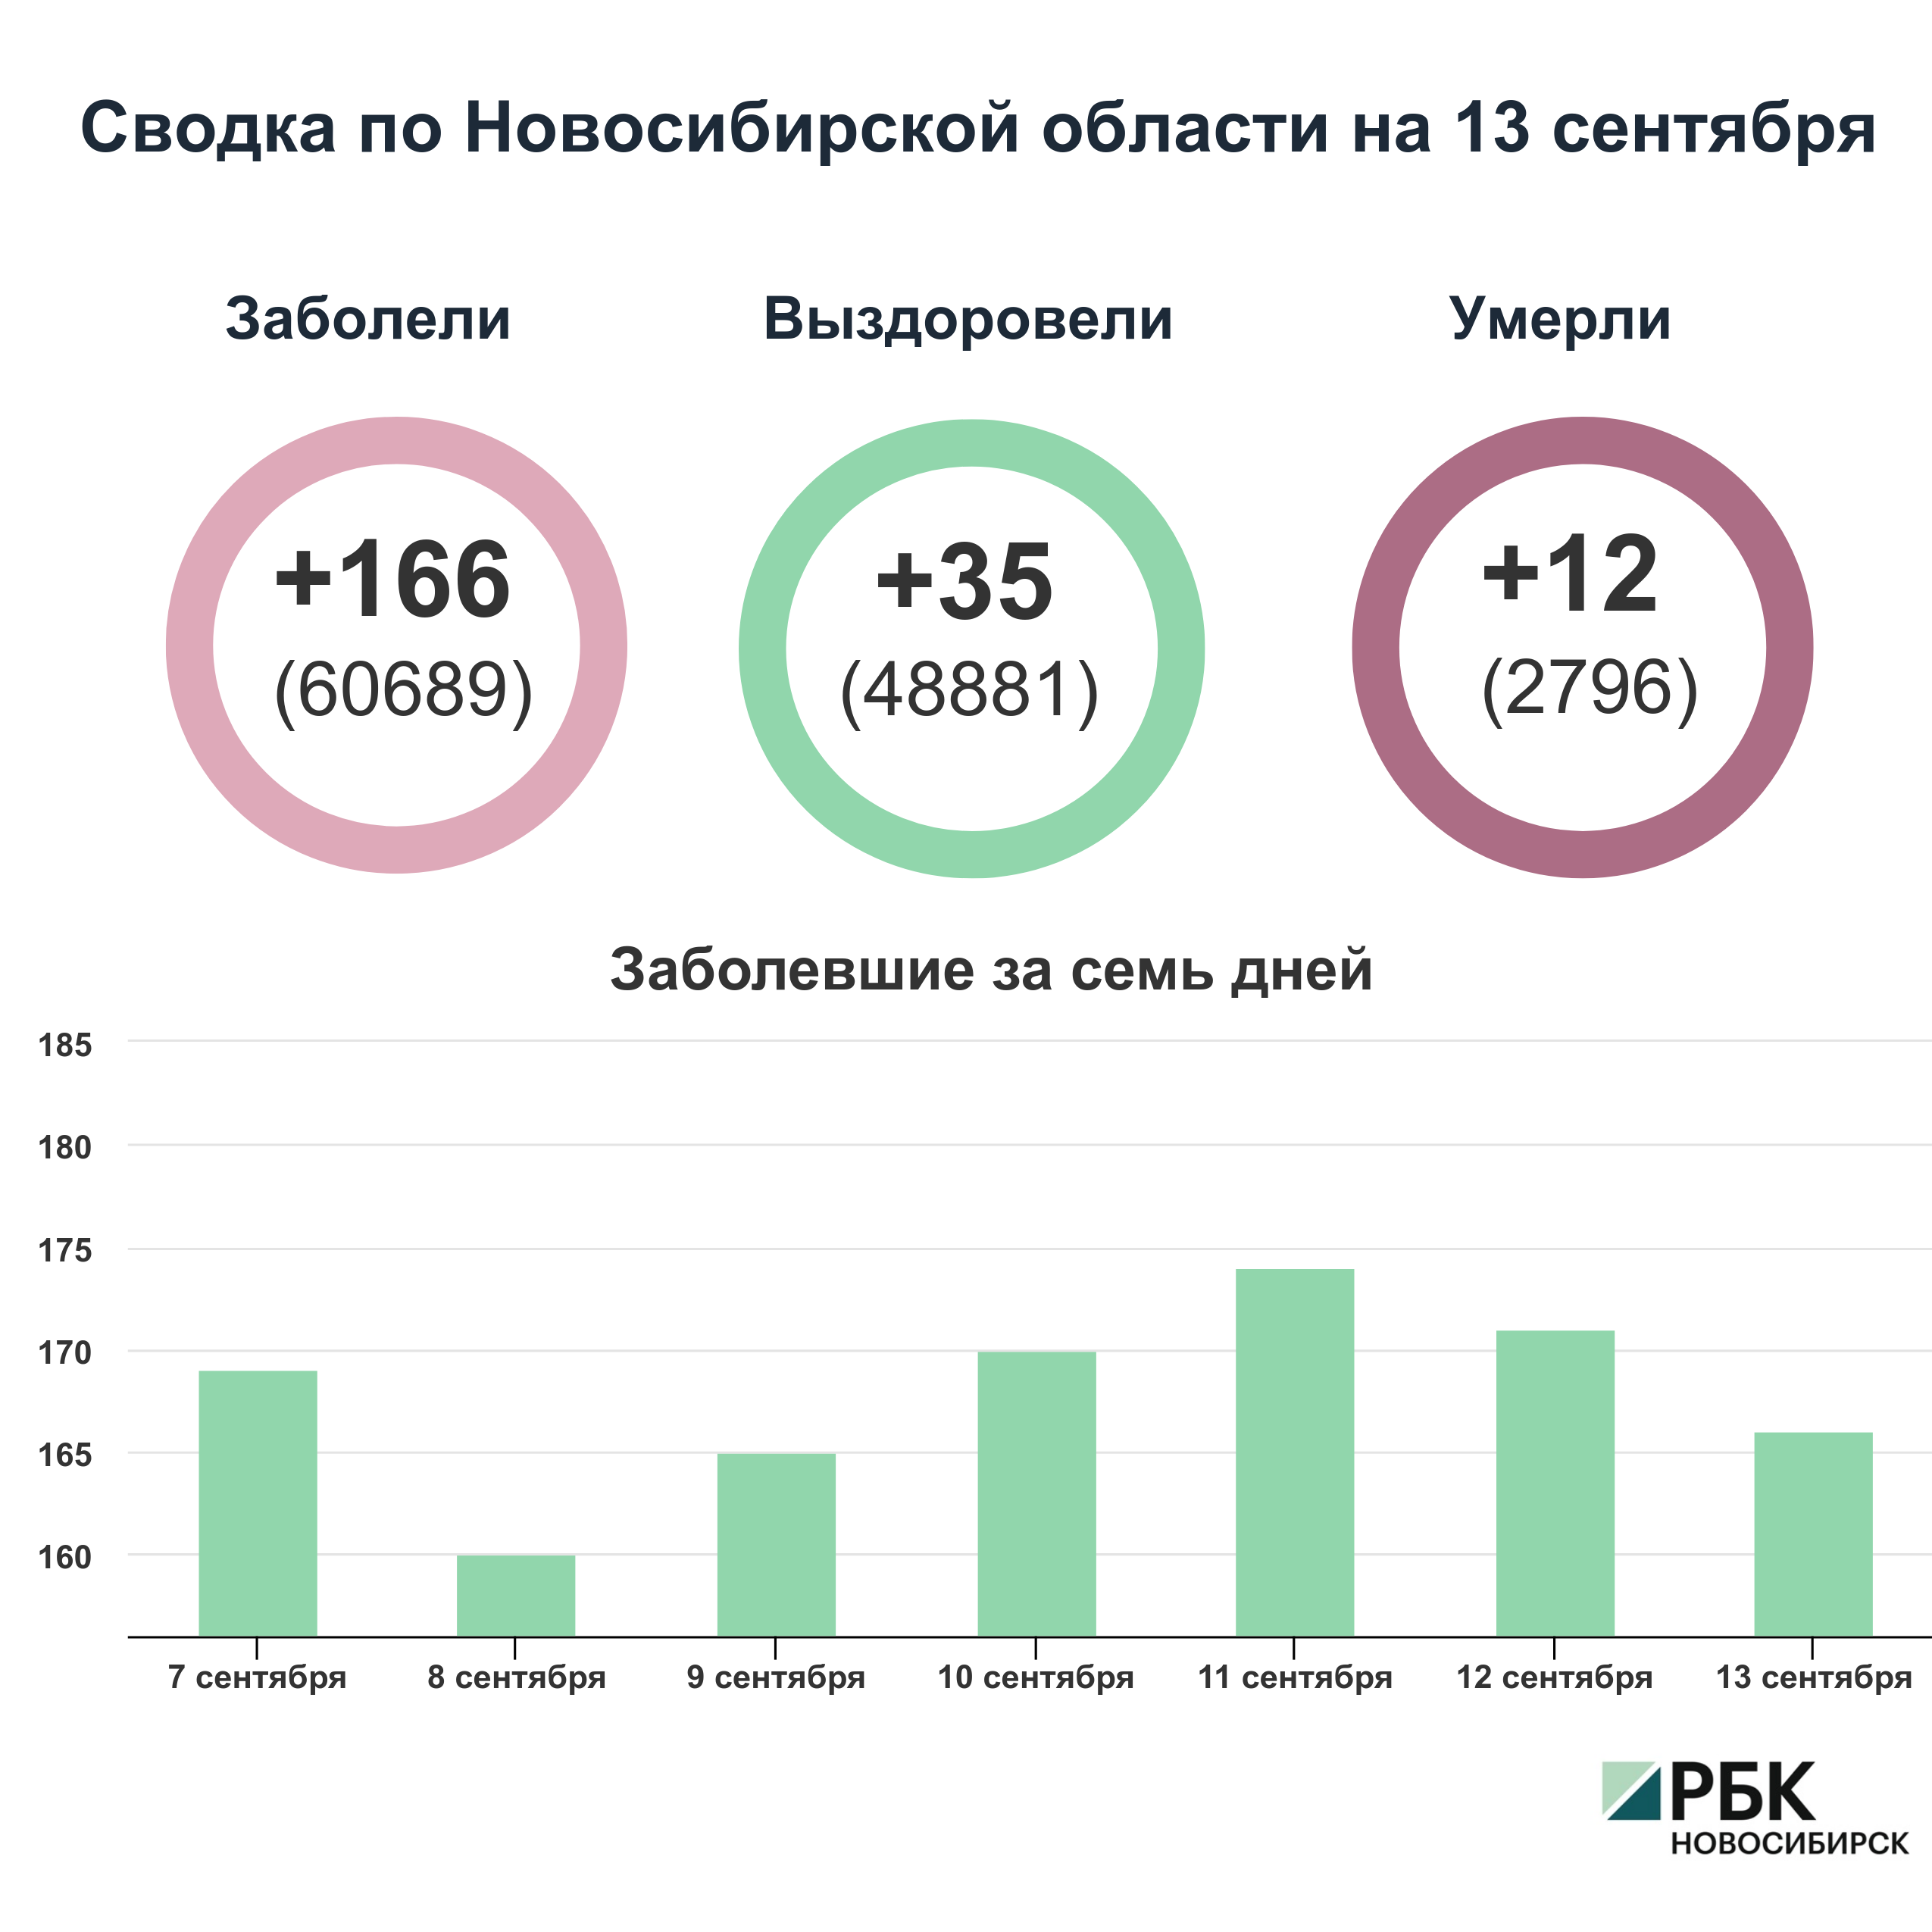 Коронавирус в Новосибирске: сводка на 13 сентября